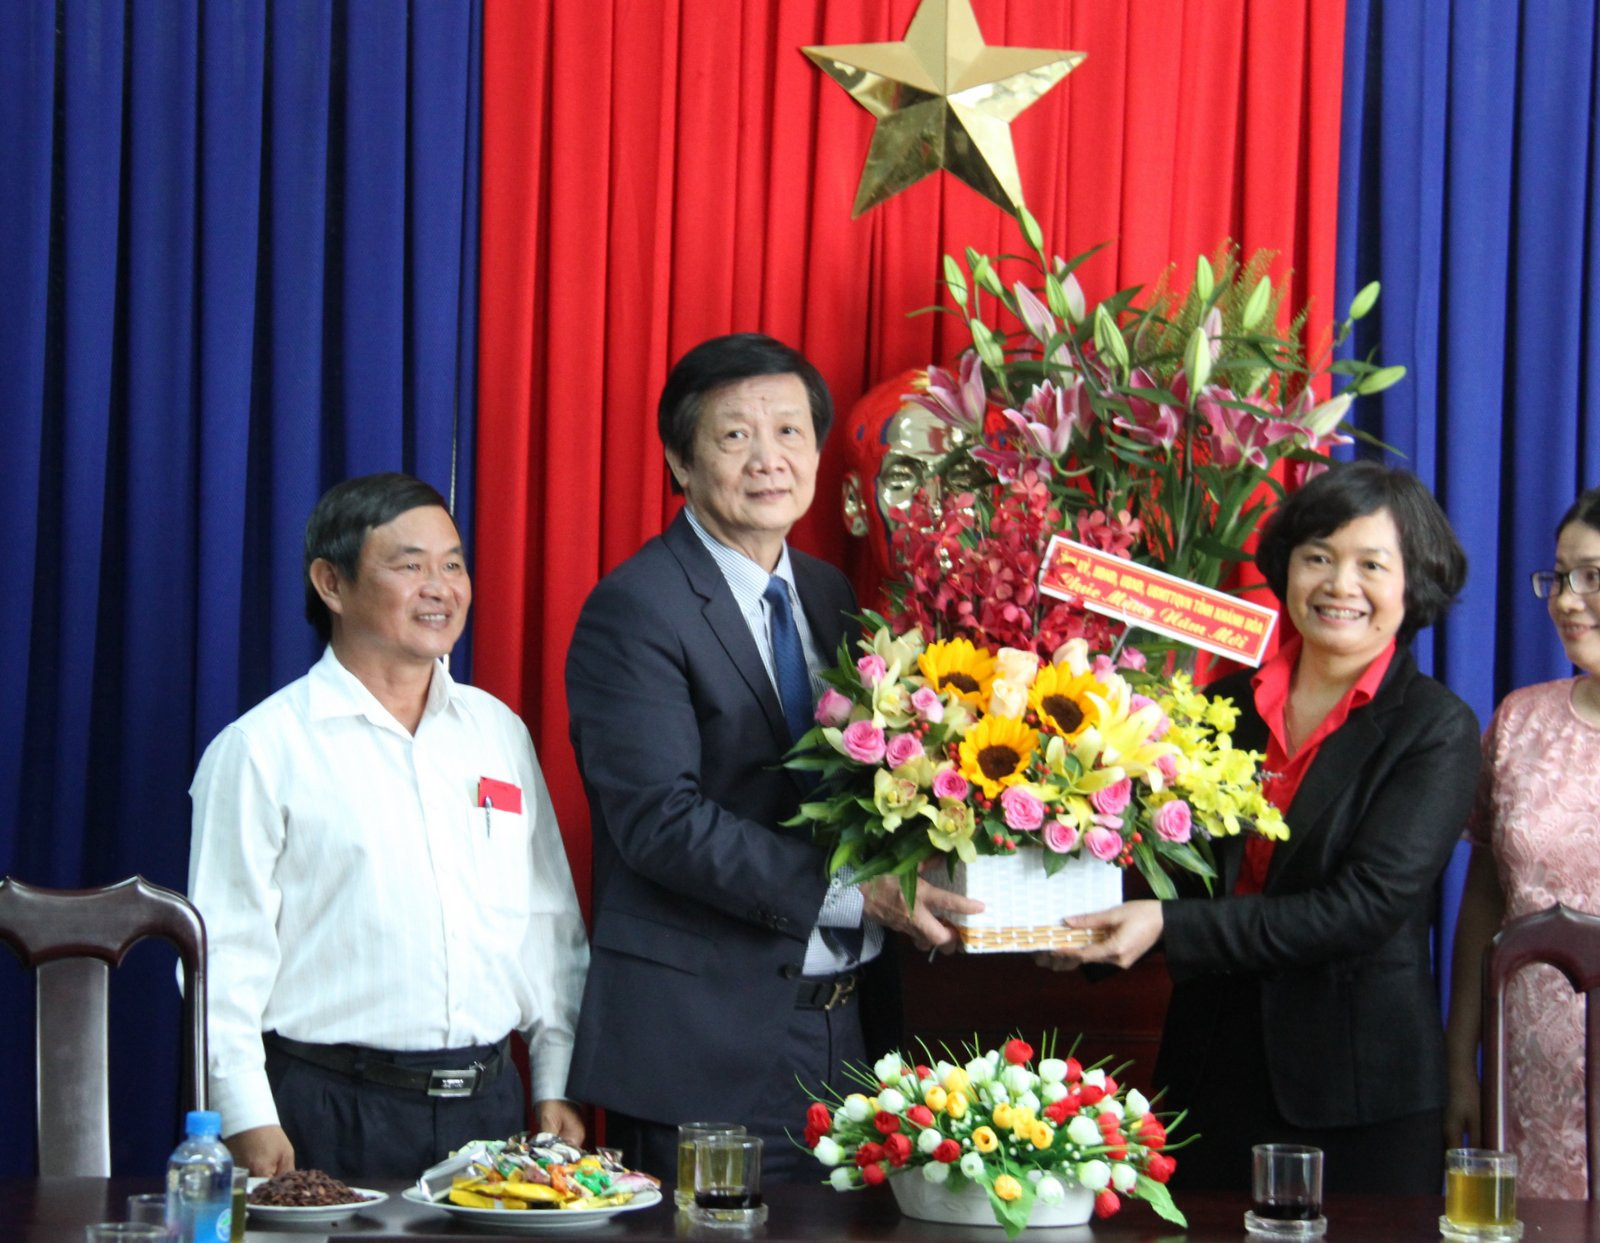  Phó Chủ tịch thường trực UBND tỉnh Khánh Hòa tặng hoa cho Sở Công thương cùng những lời nhắc về nhiêm vụ nặng nề của ngành trong năm 2019